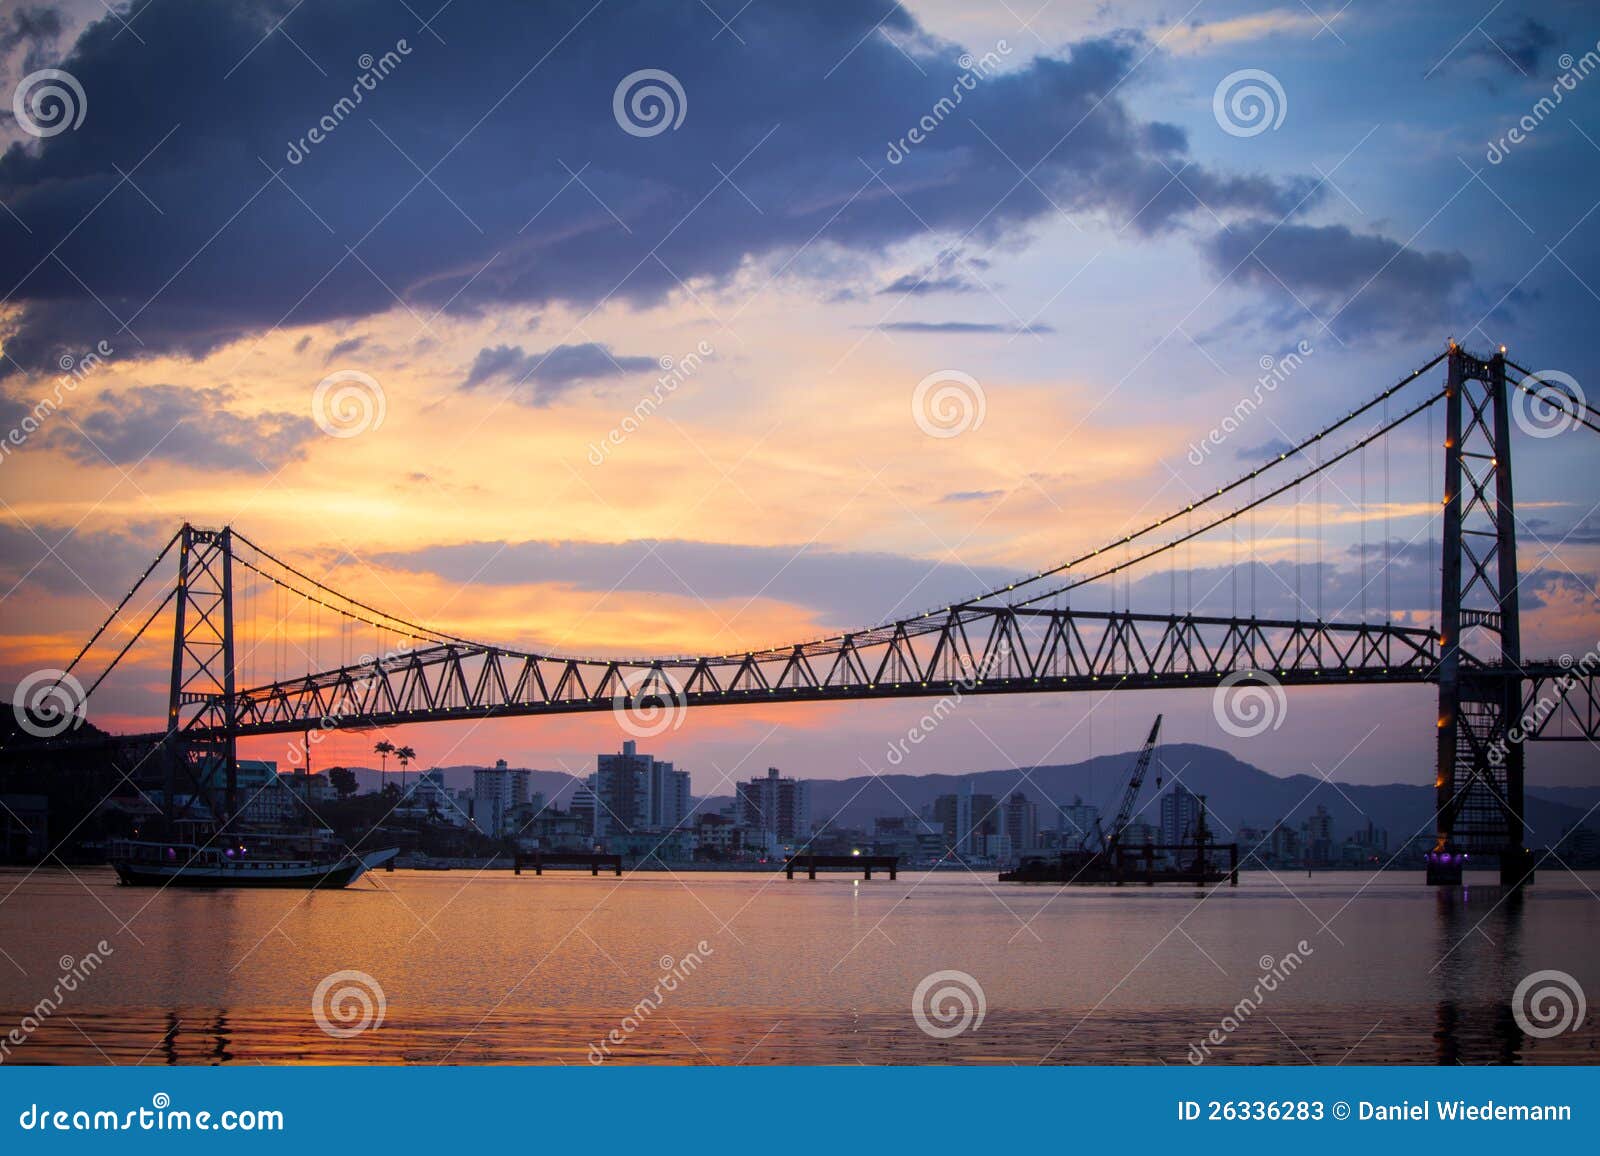 bridge in florianopolis at sunset